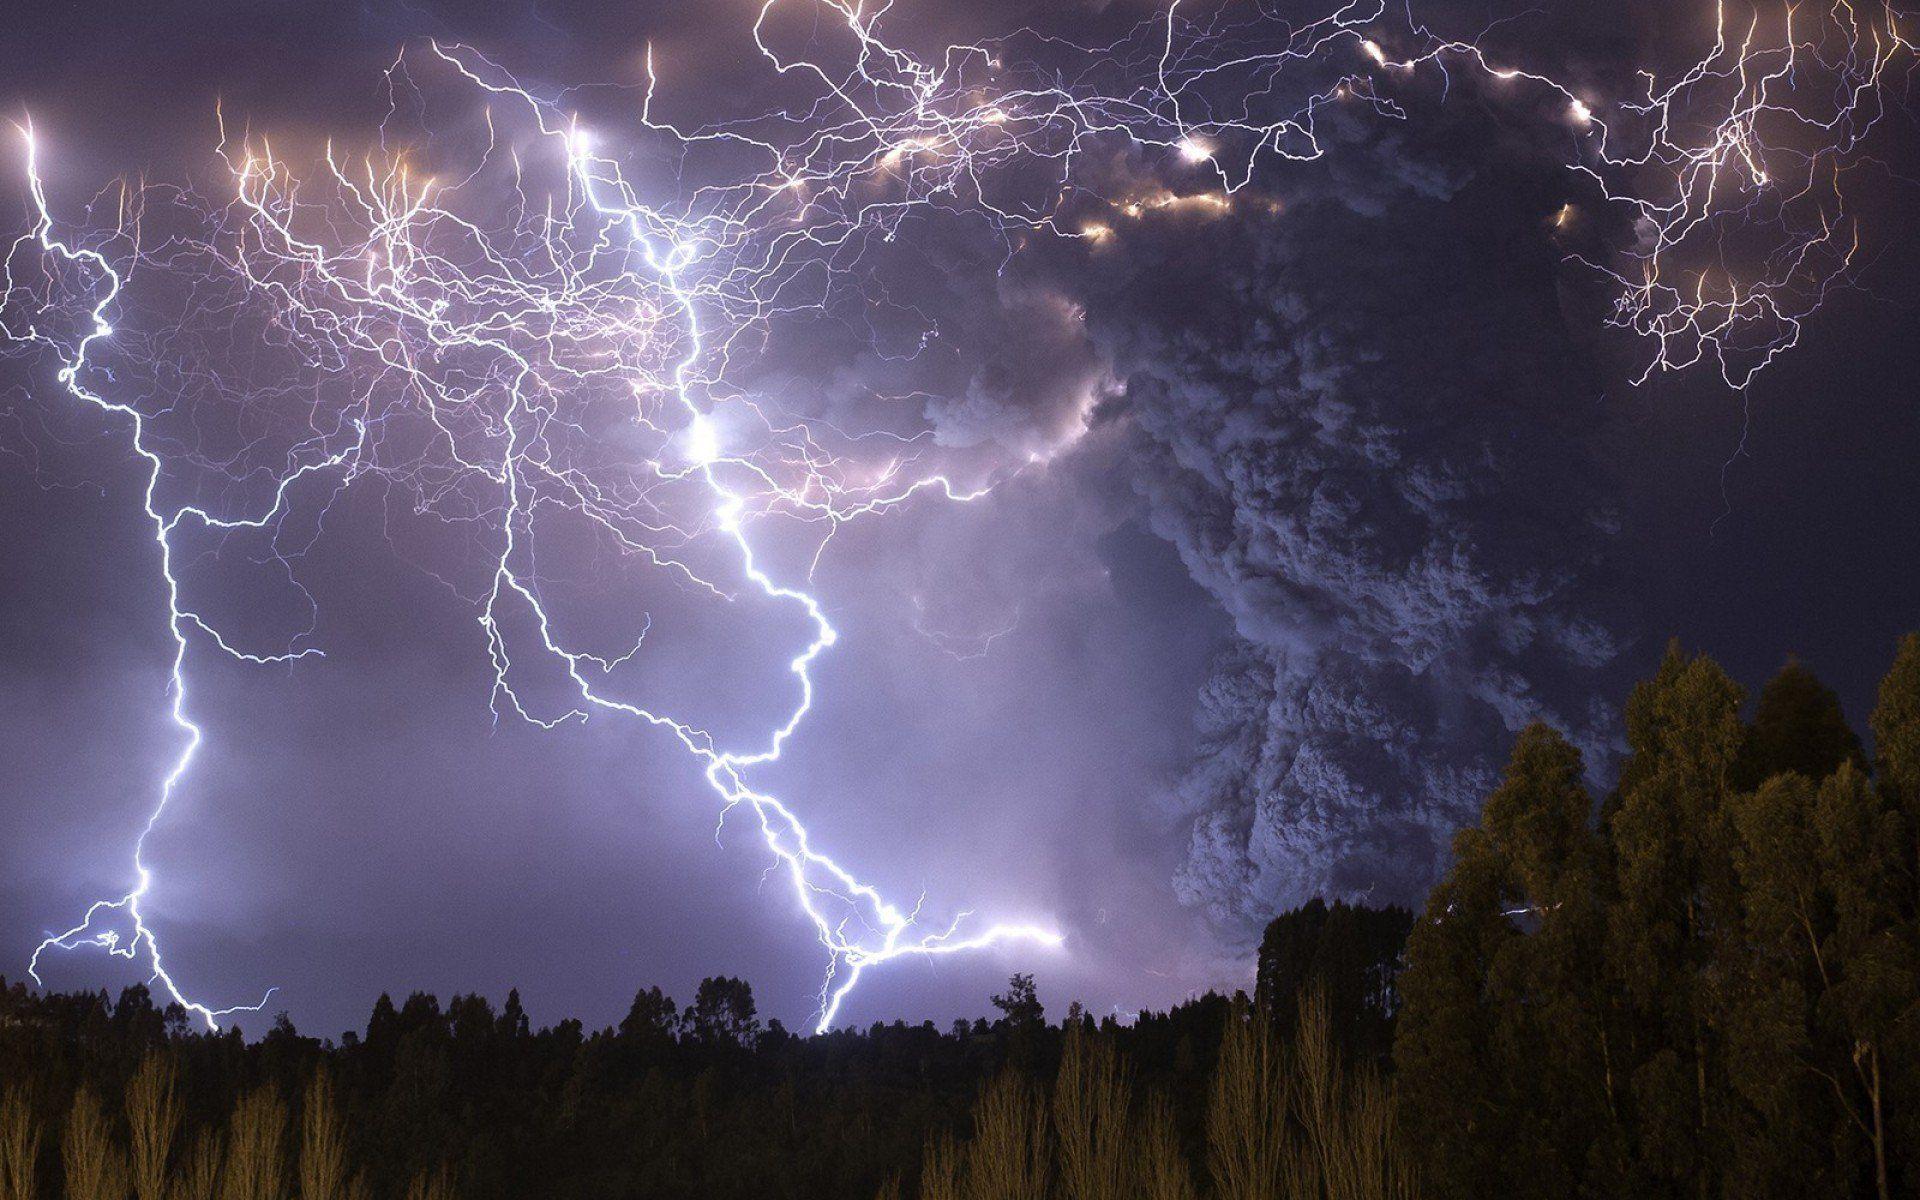 Wallpaper.wiki Lightning Thunder Volcano Background PIC WPD003100